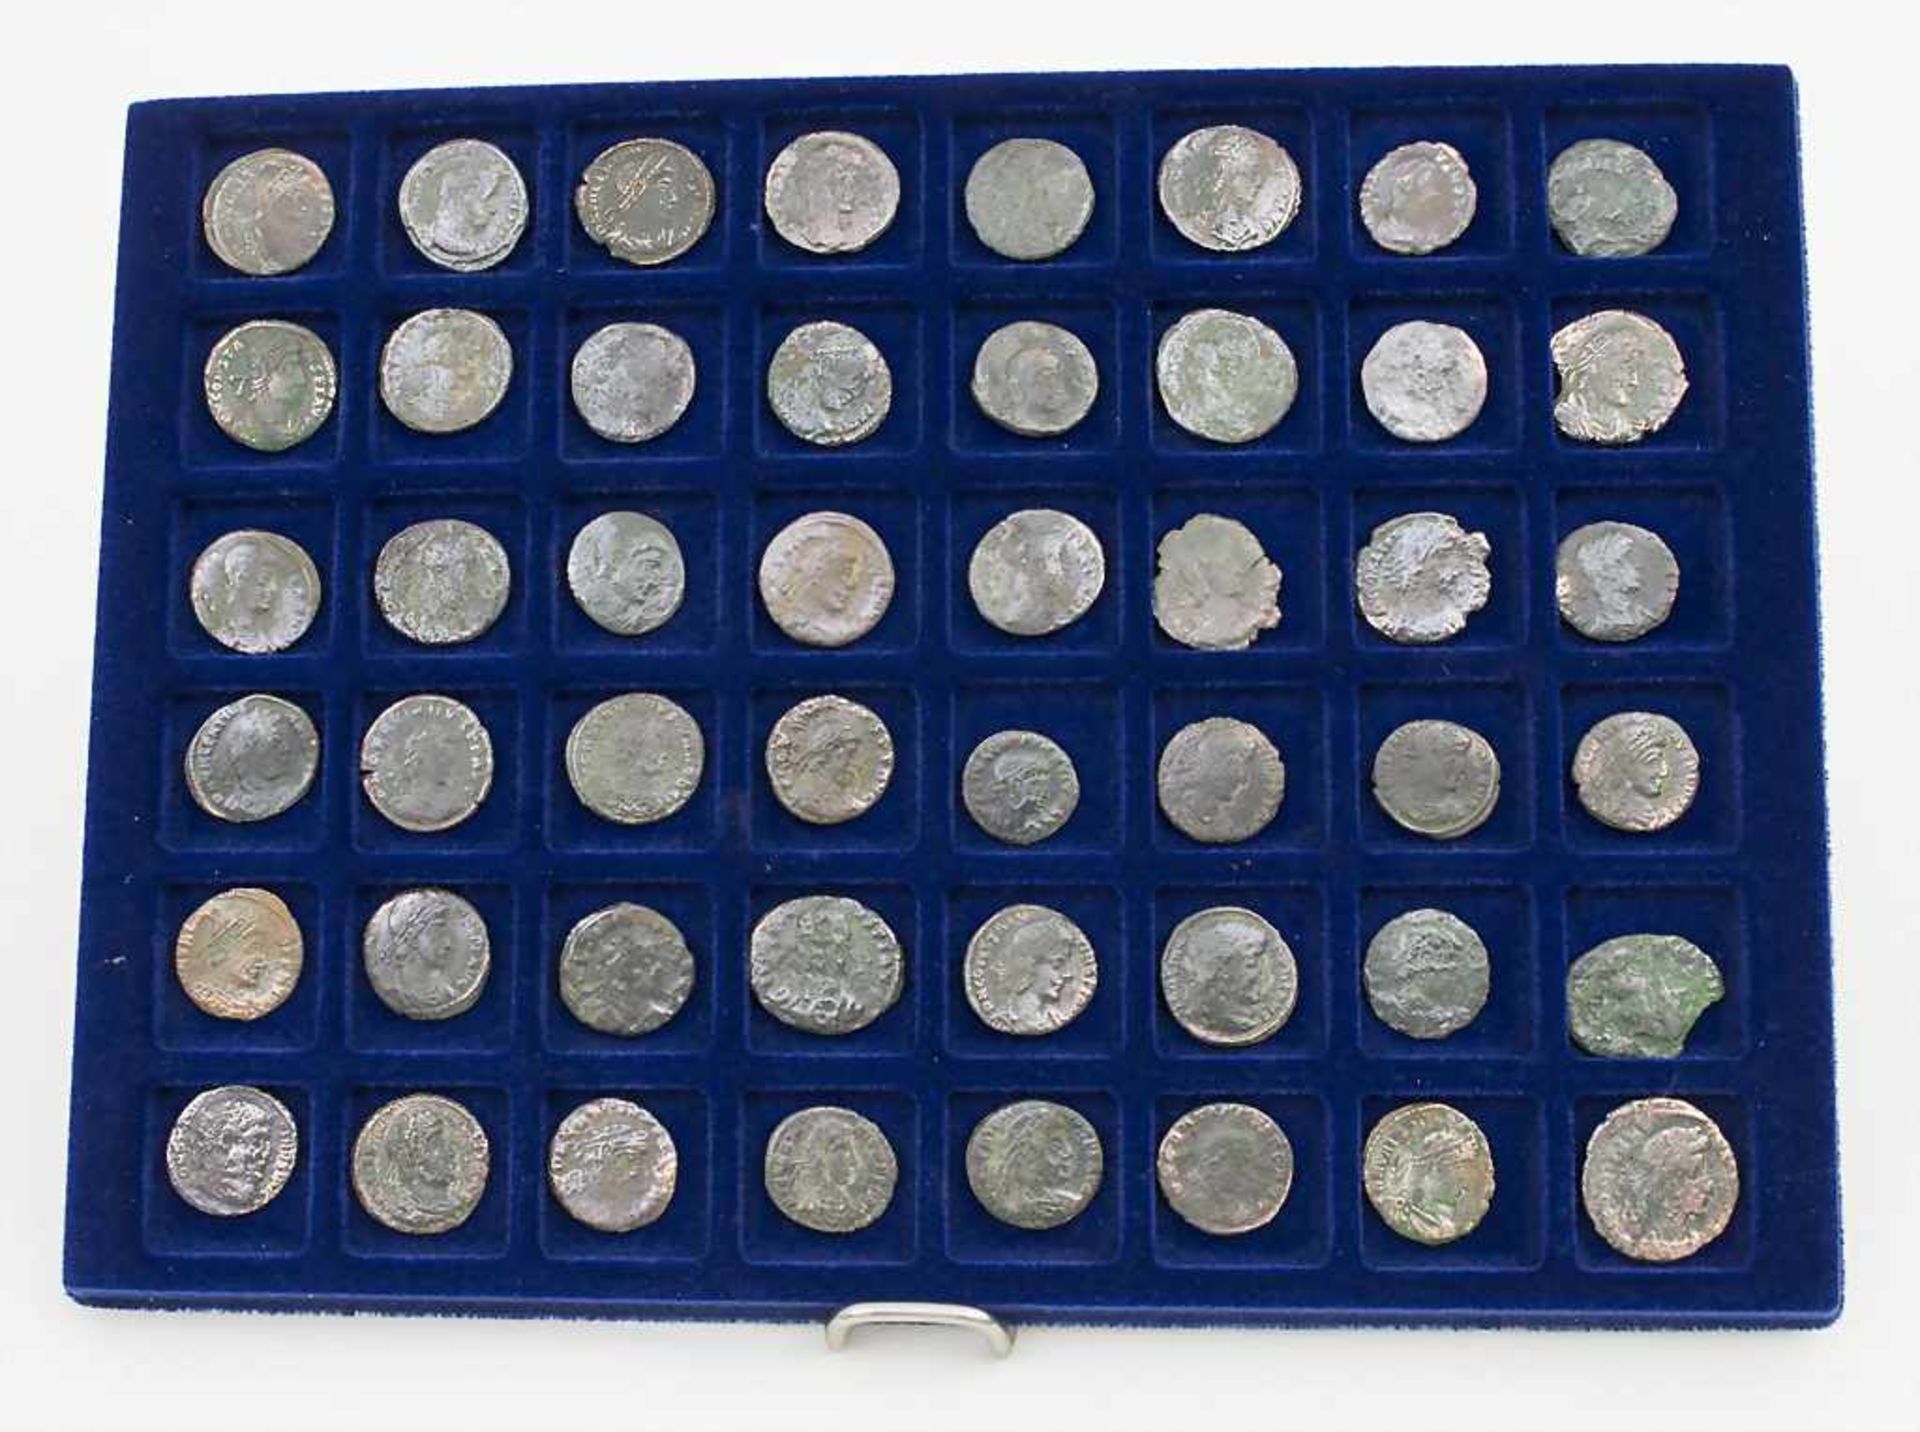 Lot 48 römische Münzen / 48 Roman coins Zustand: ungereinigter Bodenfund, Herkunft: aus alter